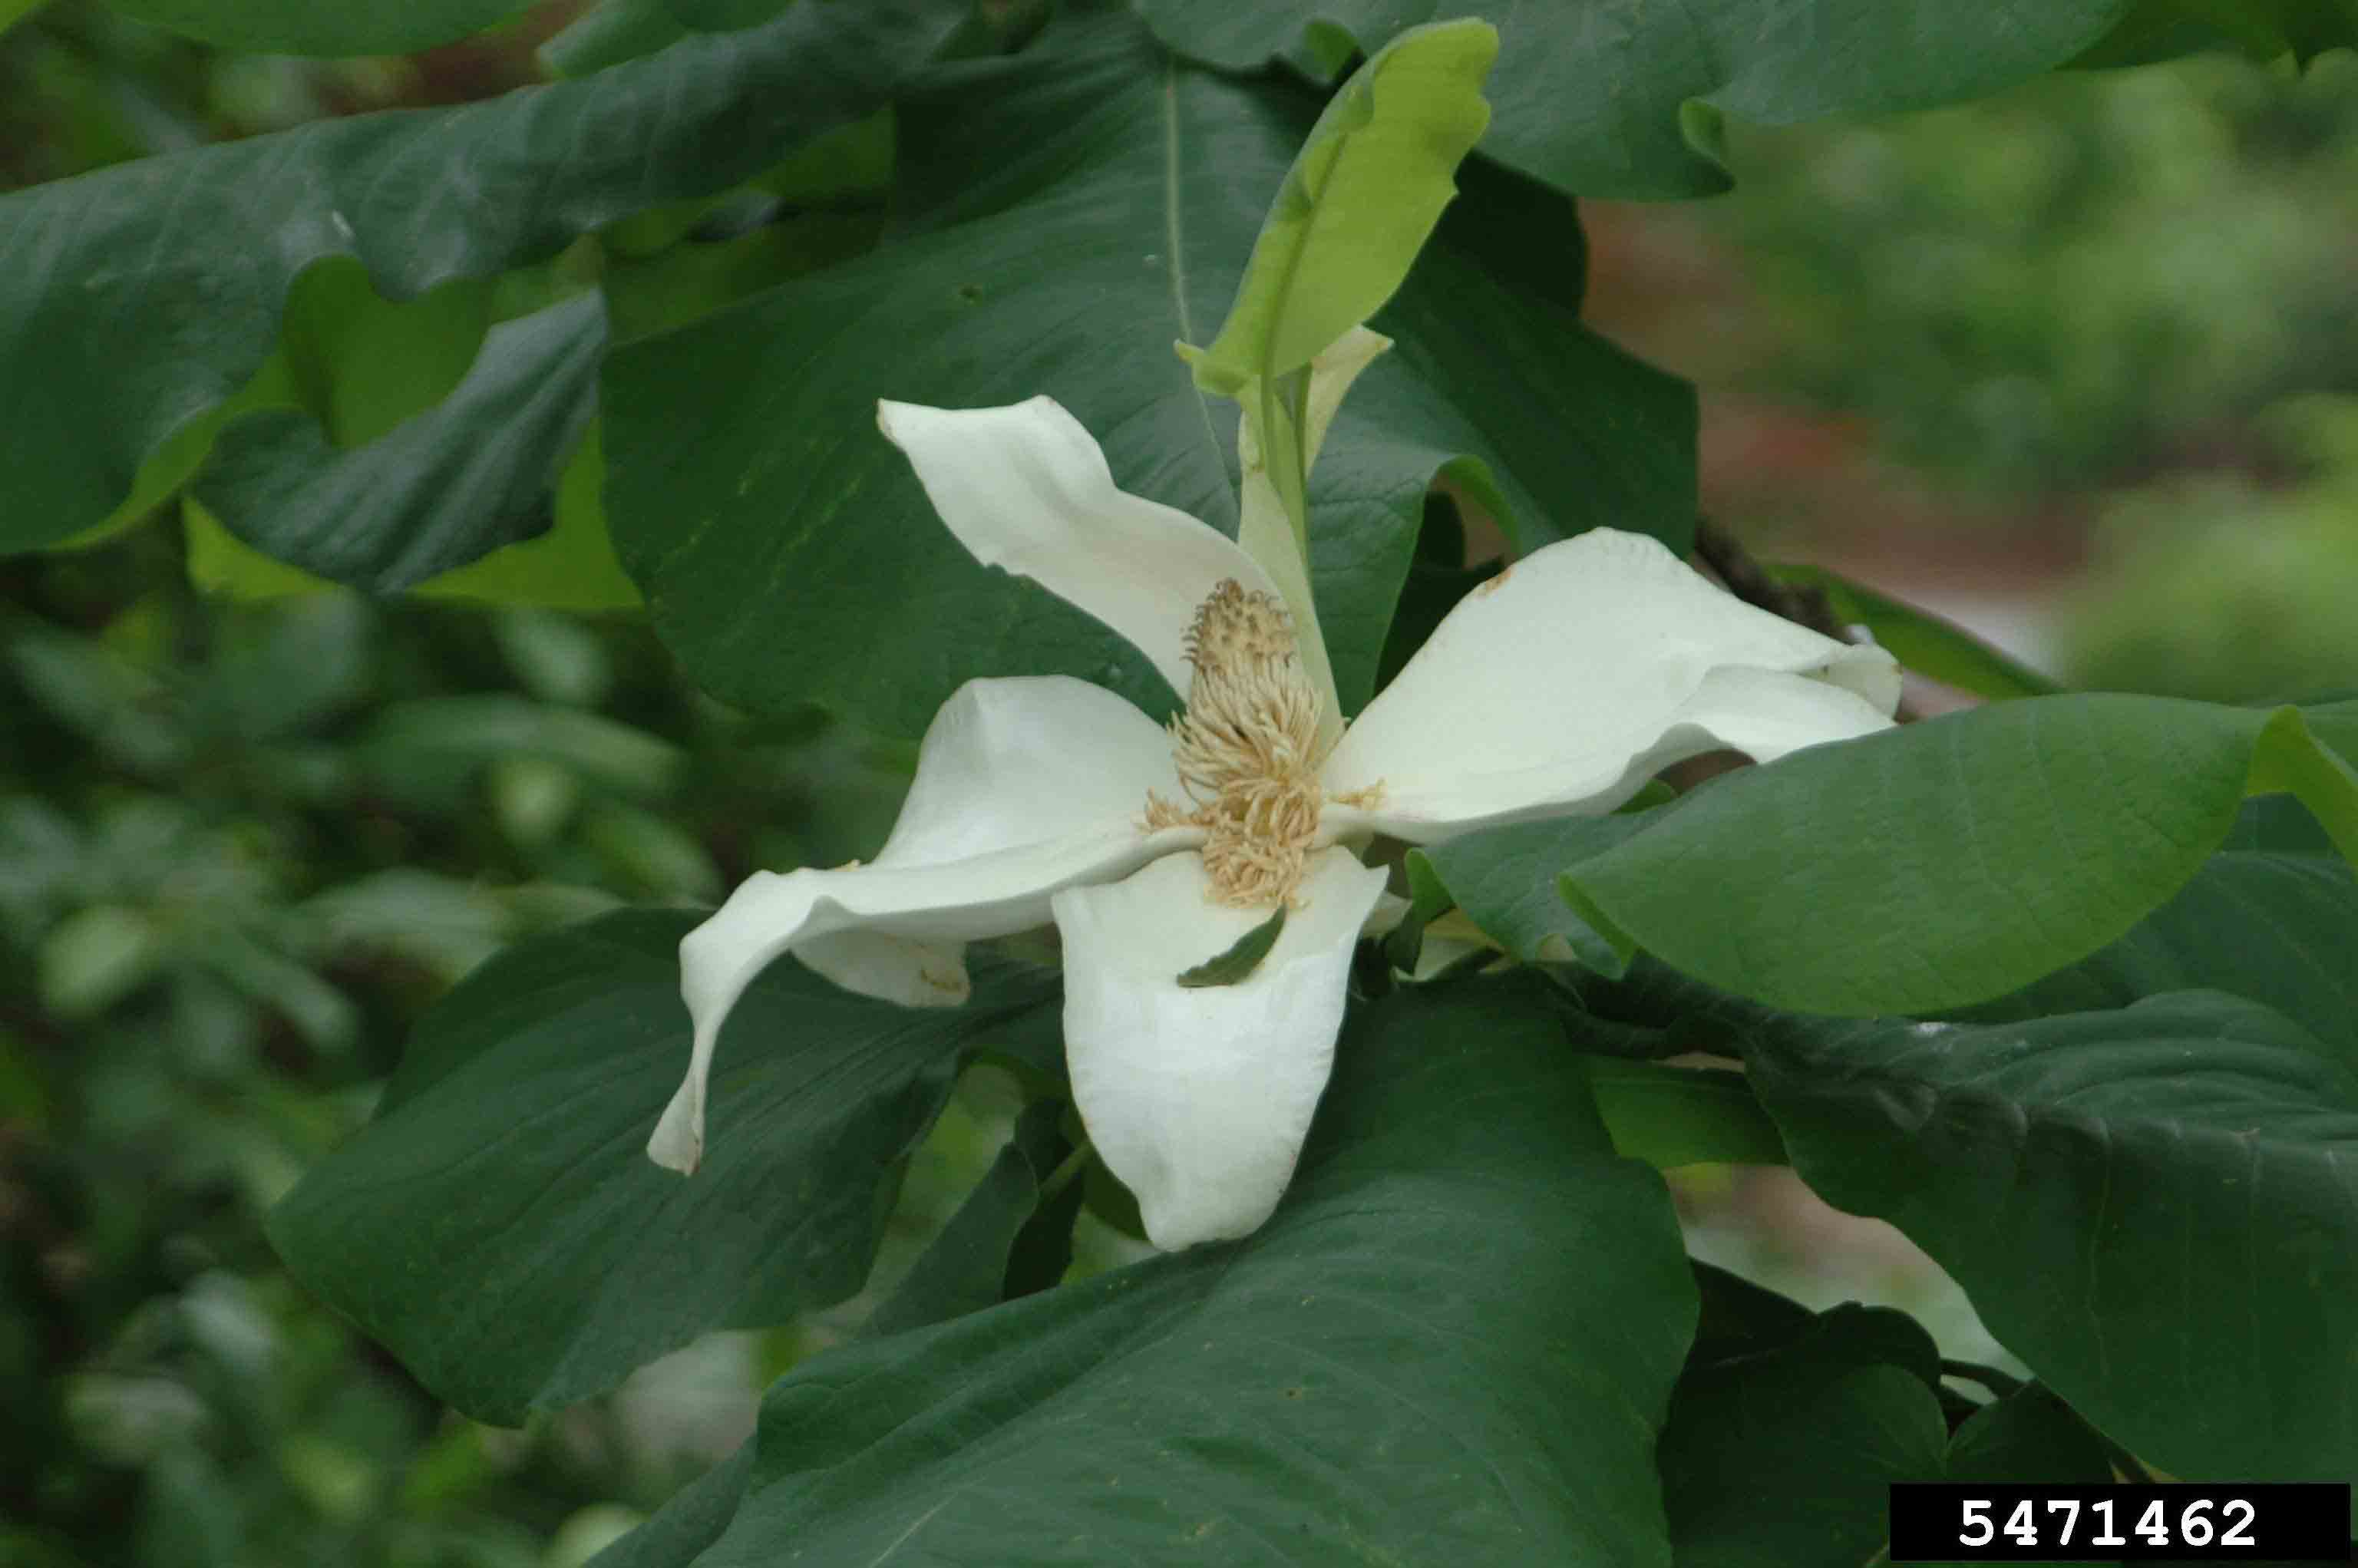 Umbrella magnolia flower